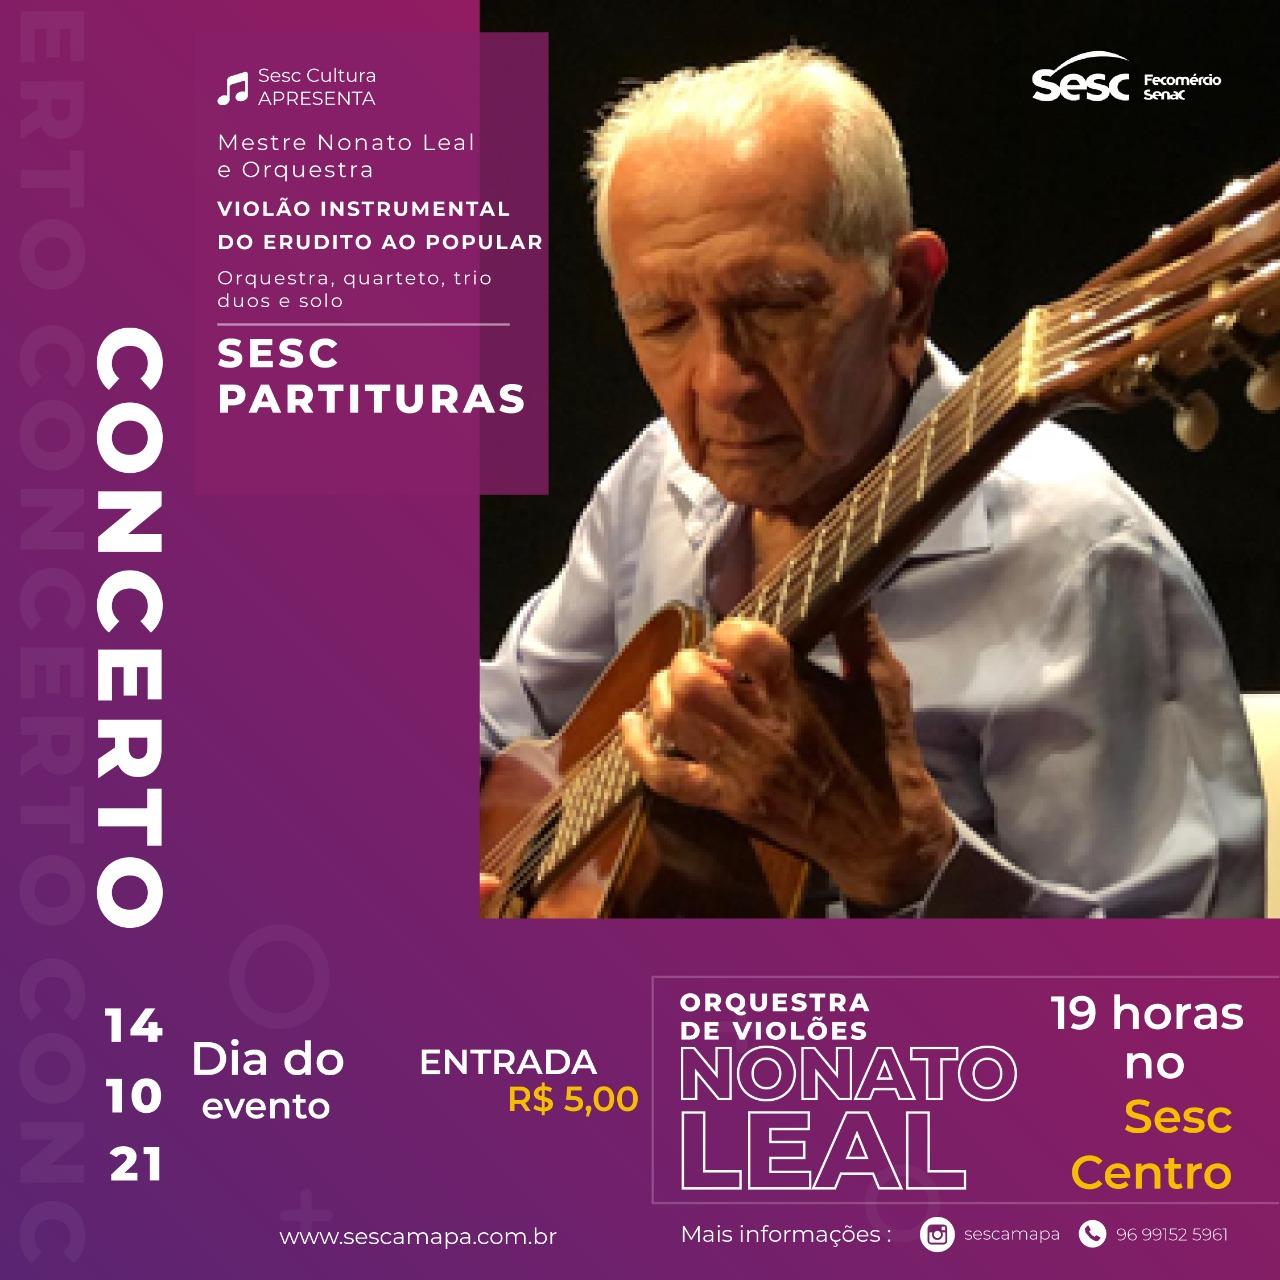 Projeto Concertos Sesc Partituras faz homenagem ao músico Nonato Leal